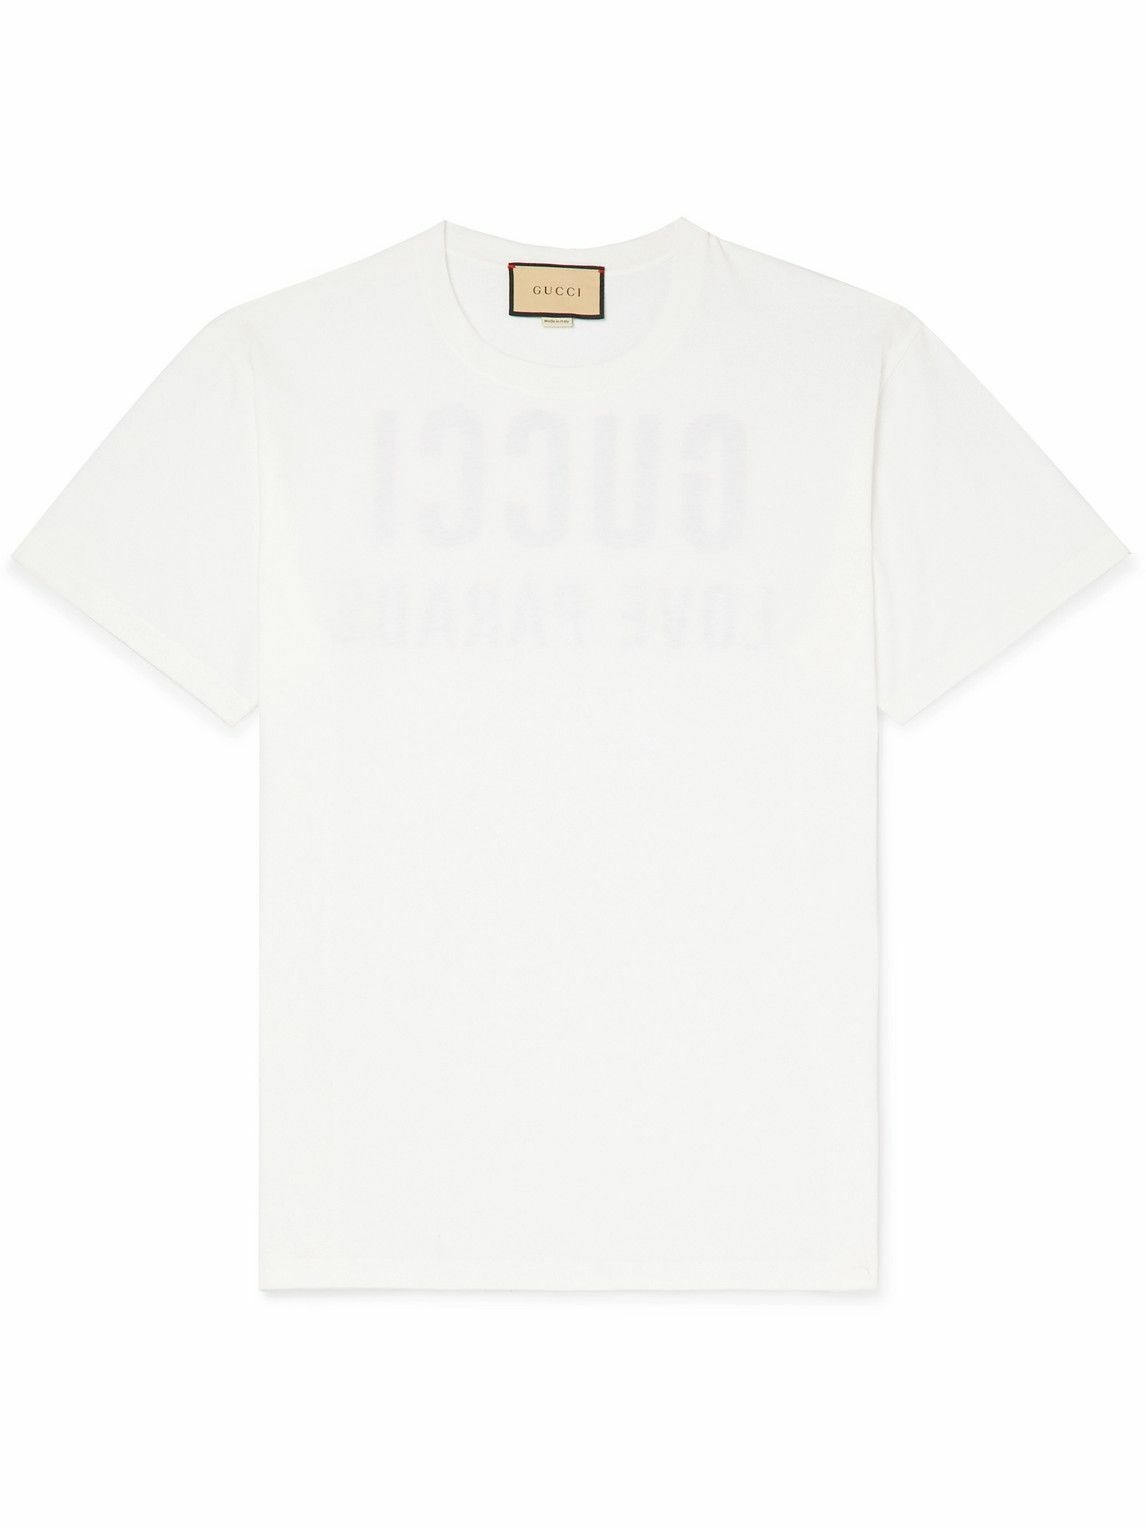 GUCCI - Logo-Print Cotton-Jersey T-Shirt - White Gucci